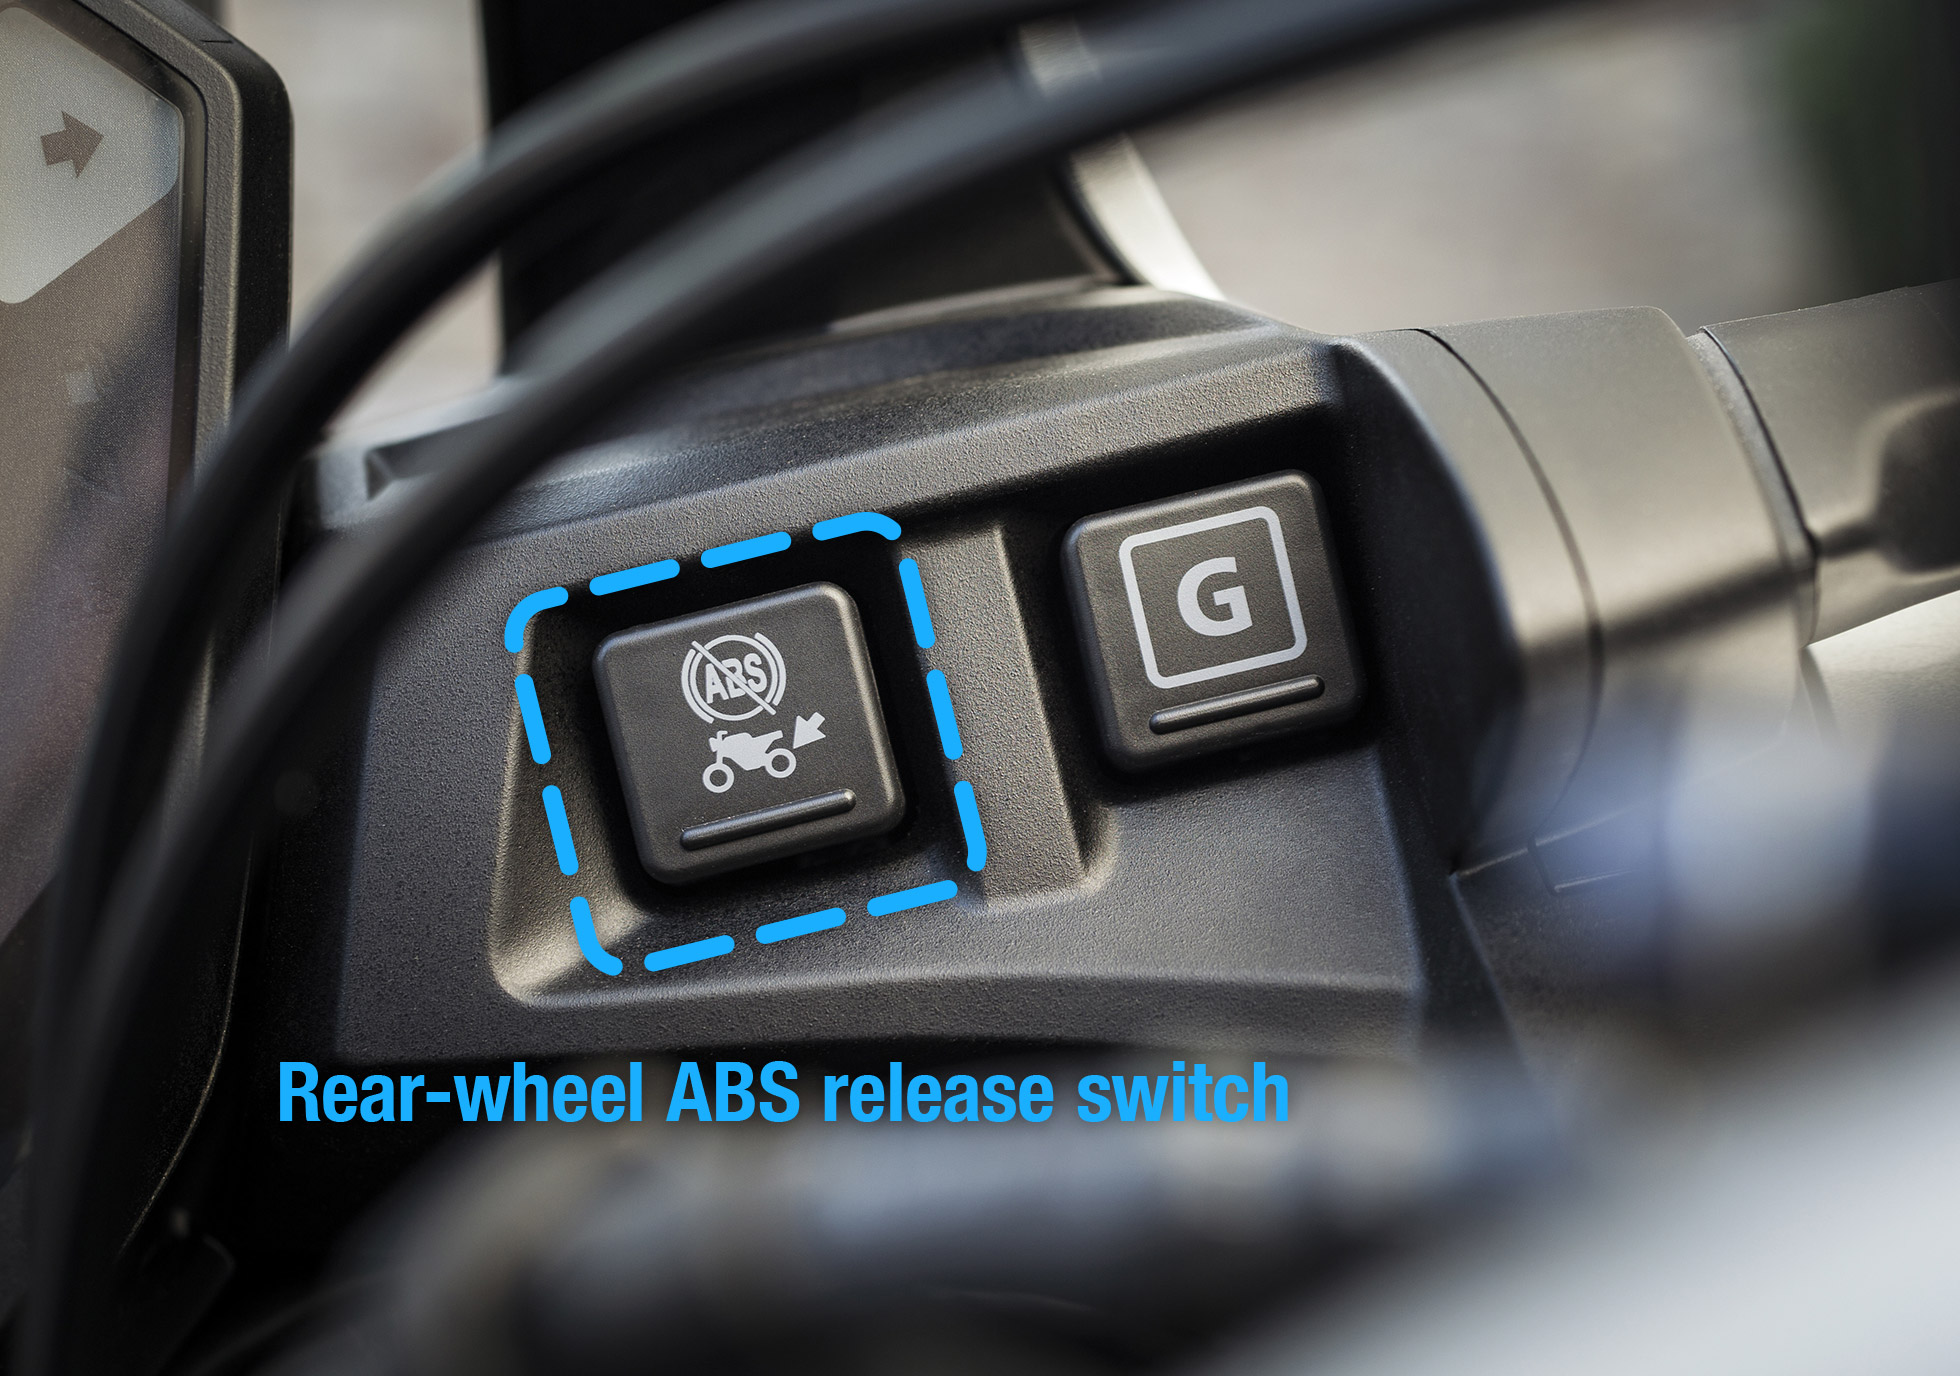 Rear-wheel ABS release switch